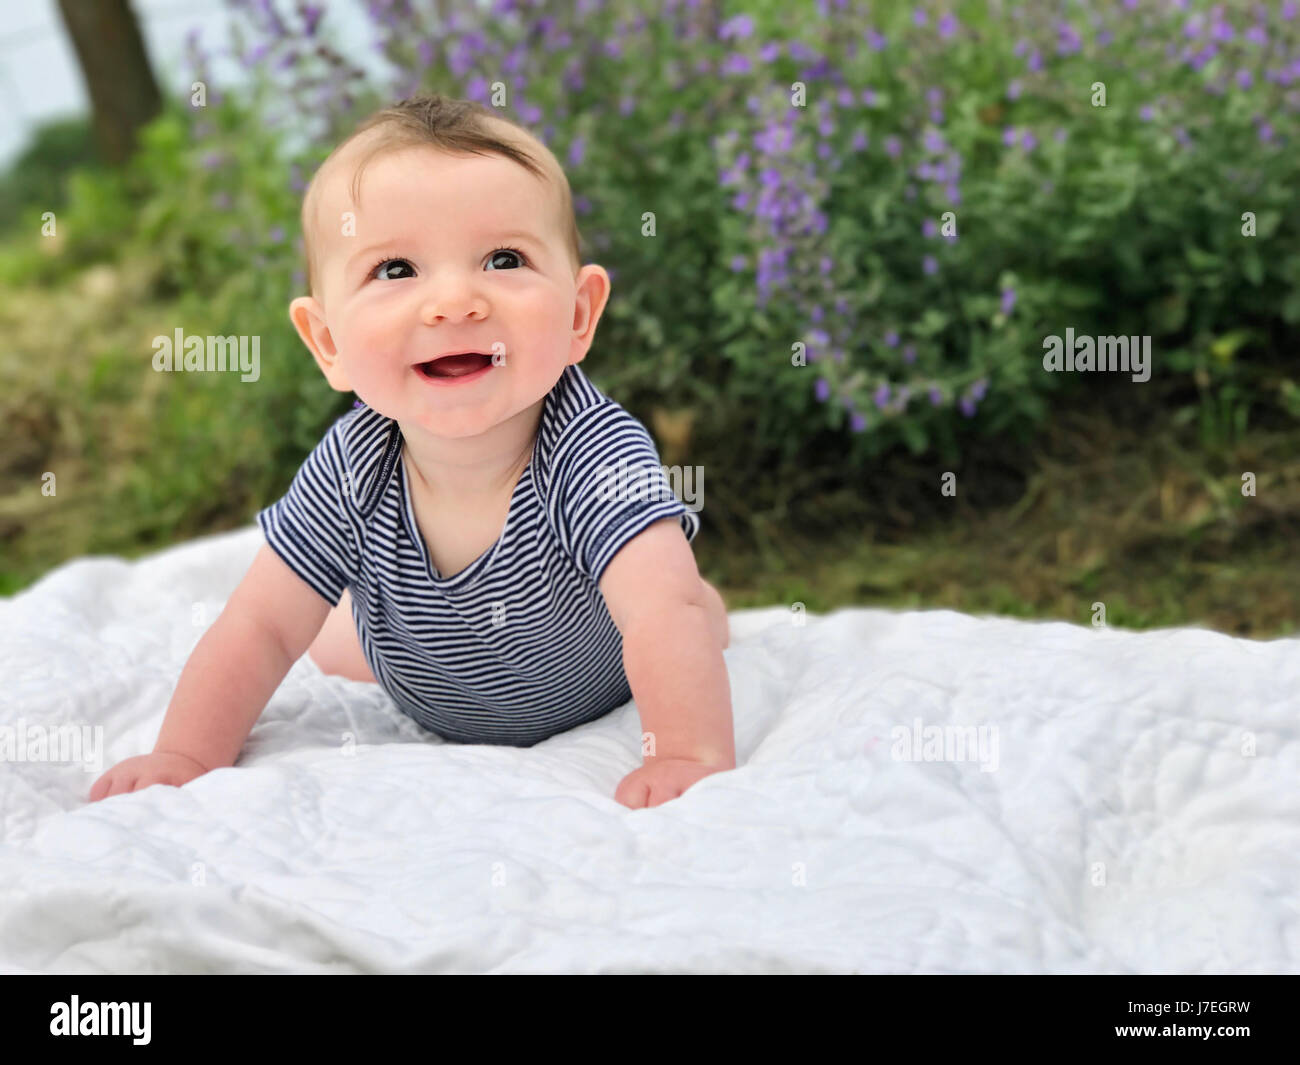 Smiling baby boy portrait Banque D'Images